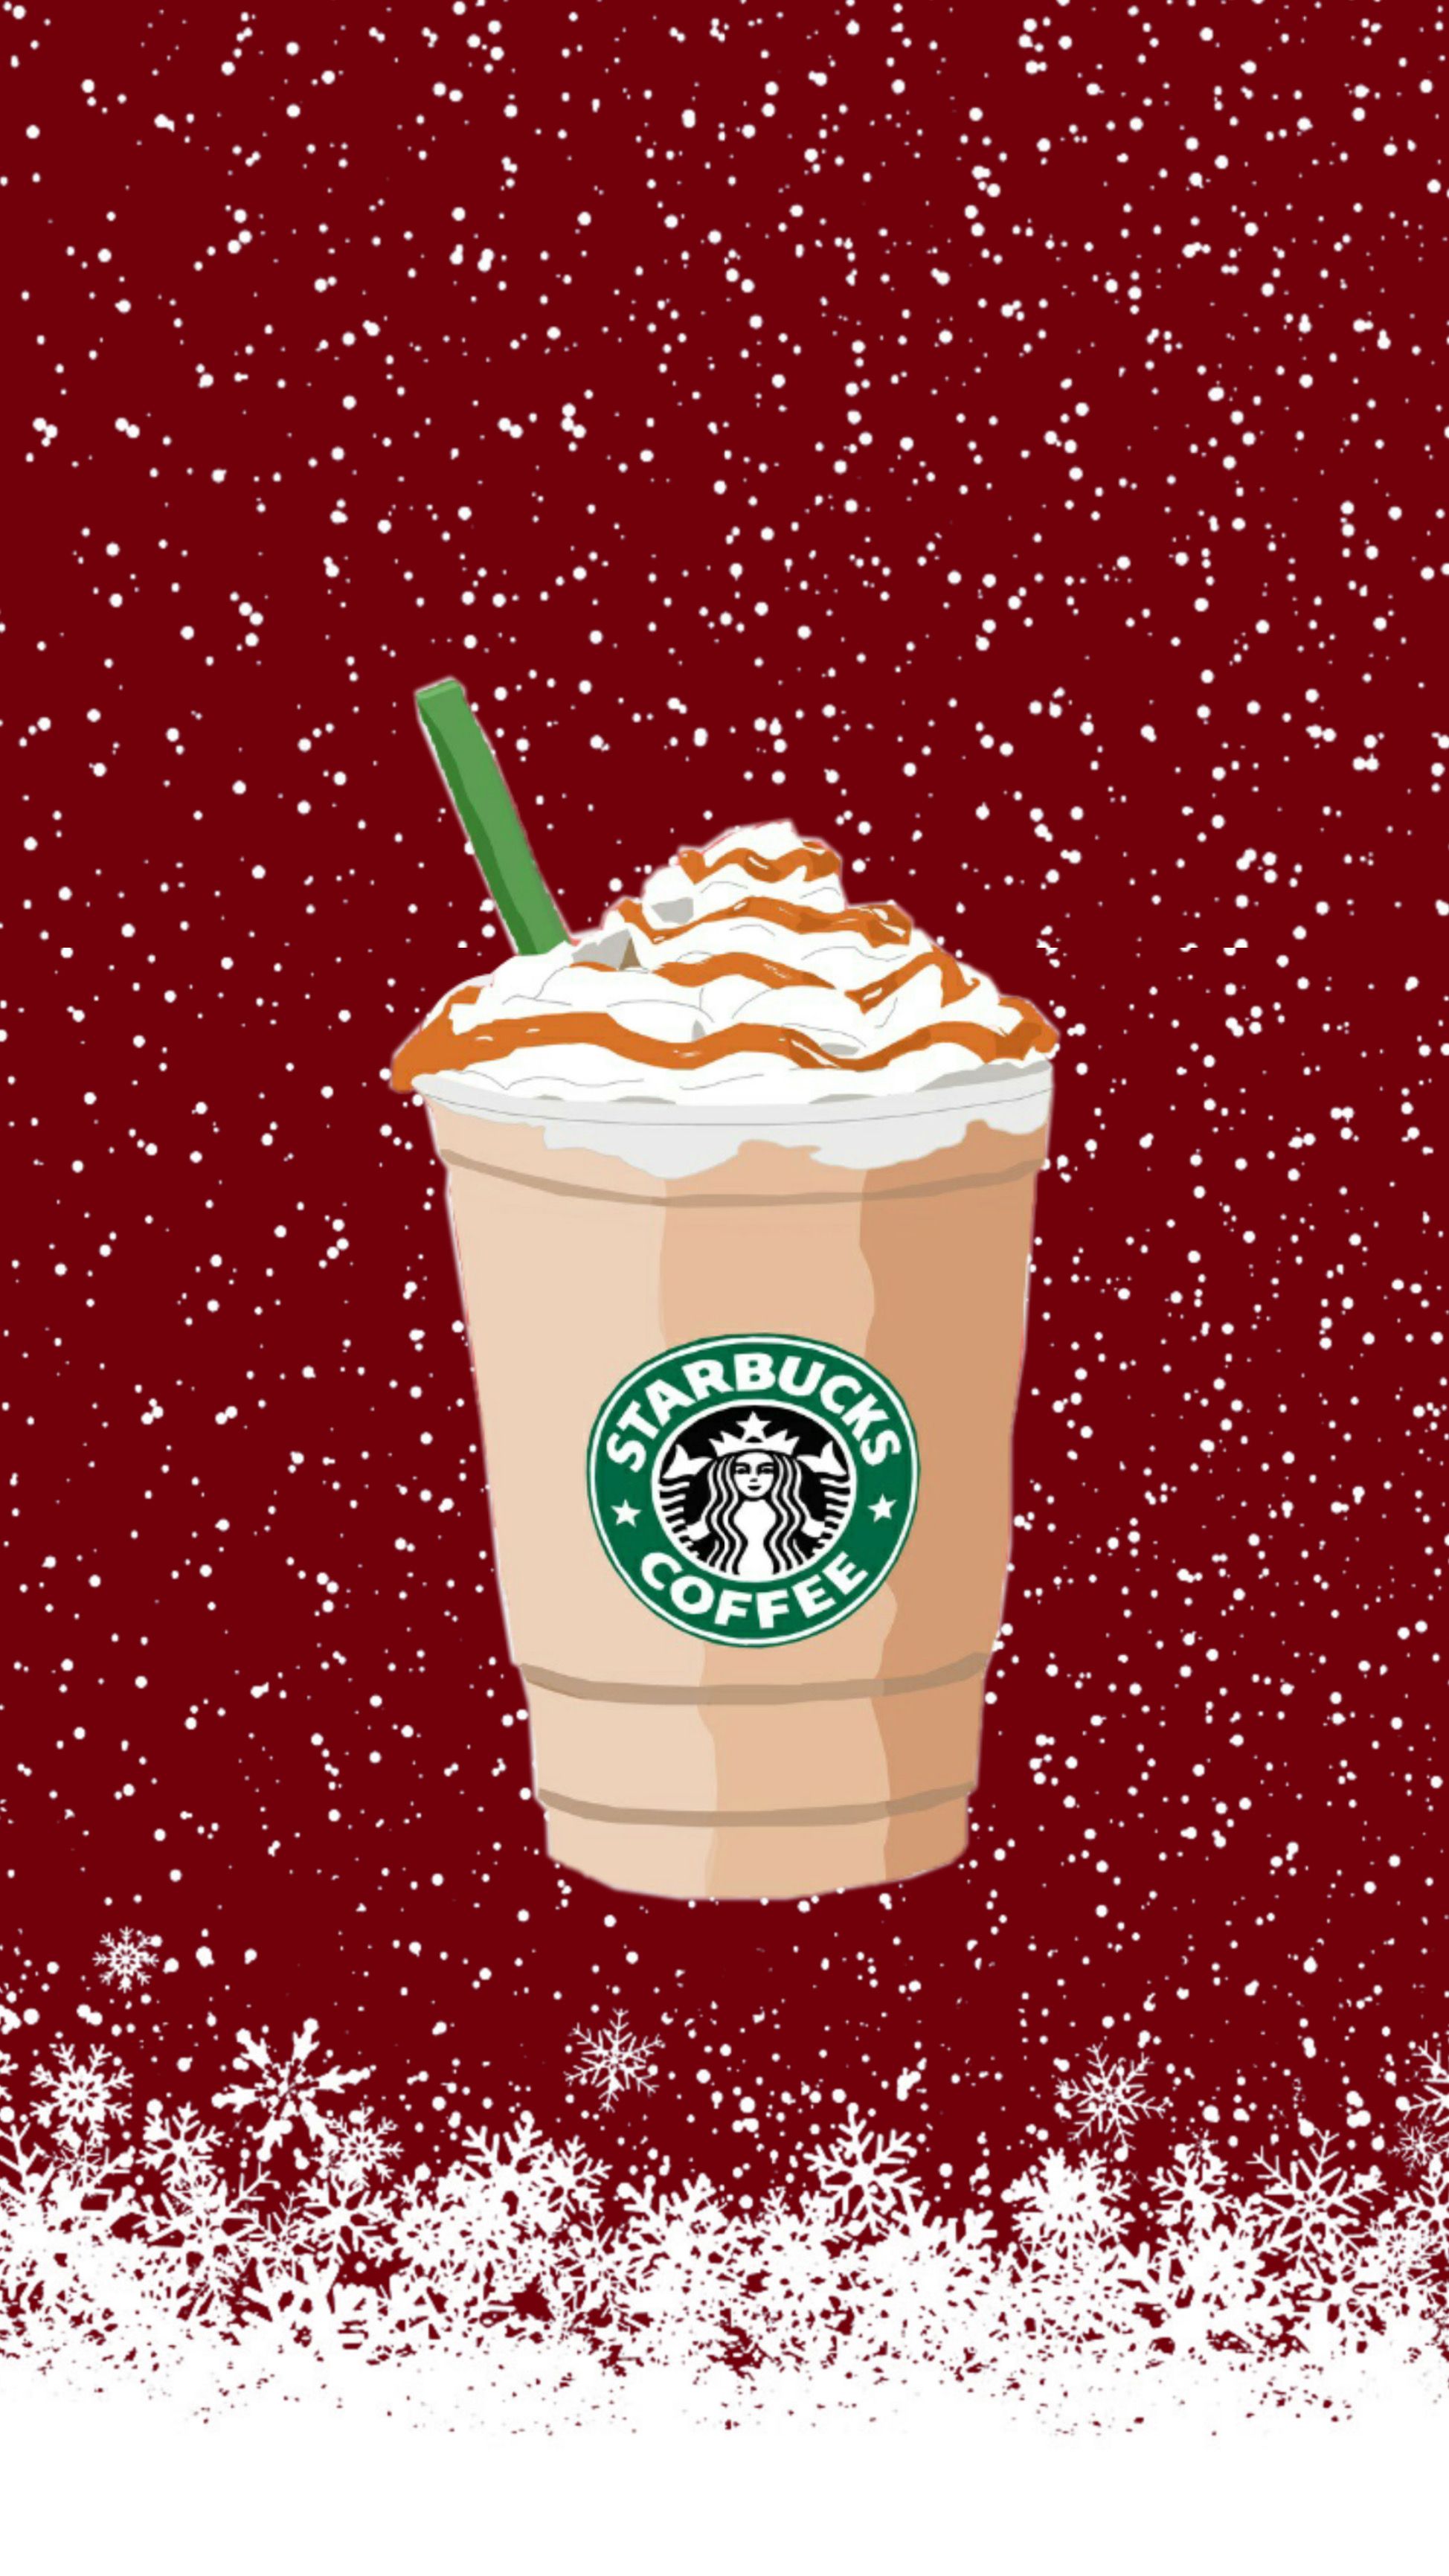 Starbucks Caramel Frappuccino Christmas Wallpaper / Fondo de Pantalla de Starbucks Navideño. Starbucks wallpaper, Christmas wallpaper, Starbucks caramel